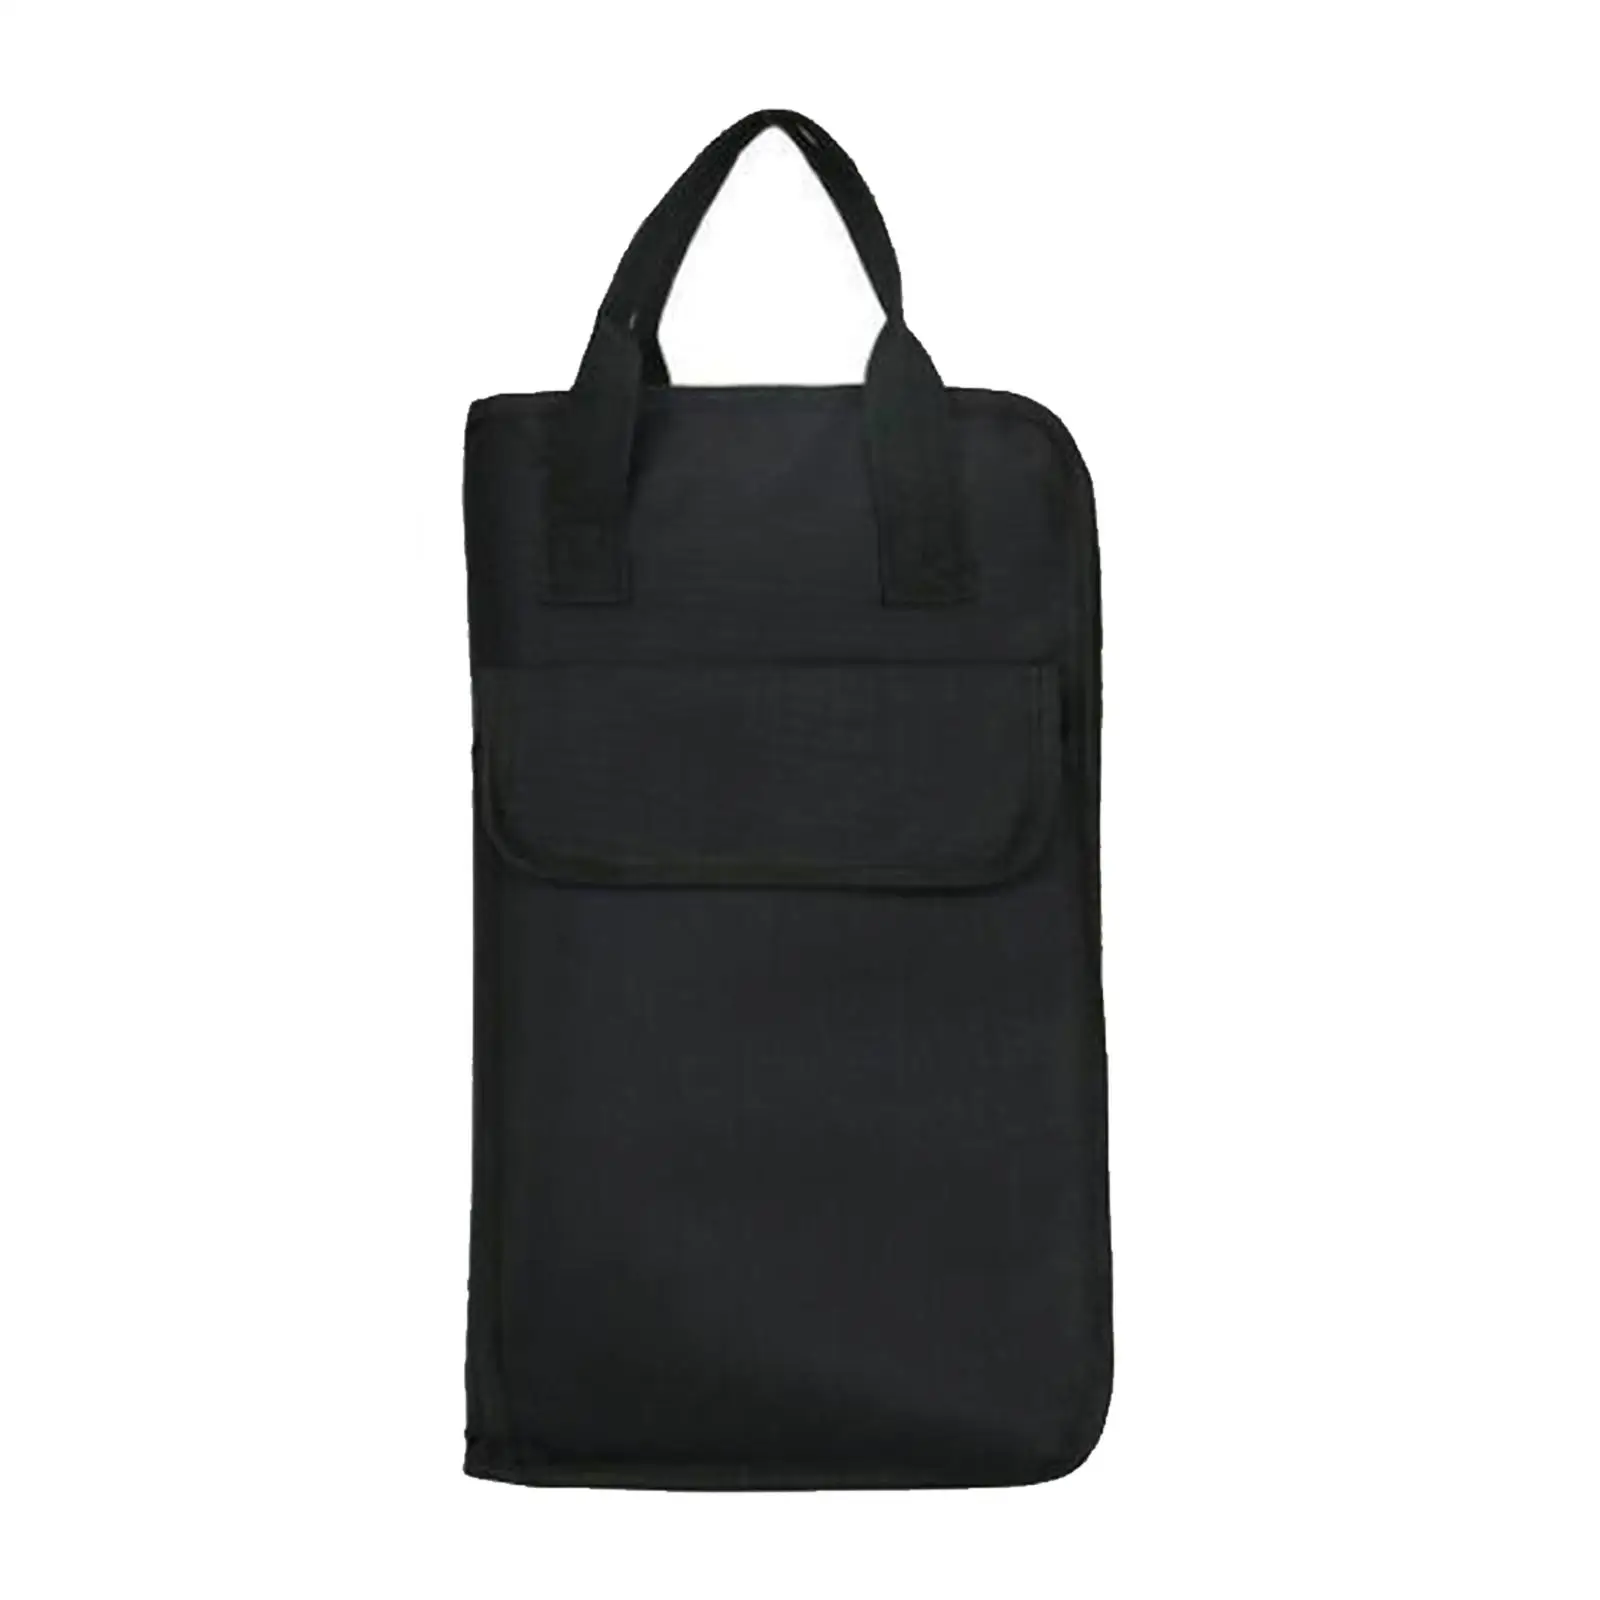 Drumstick Bag Mallet Bag with Shoulder Strap Water Resistant Large Capacity Drum